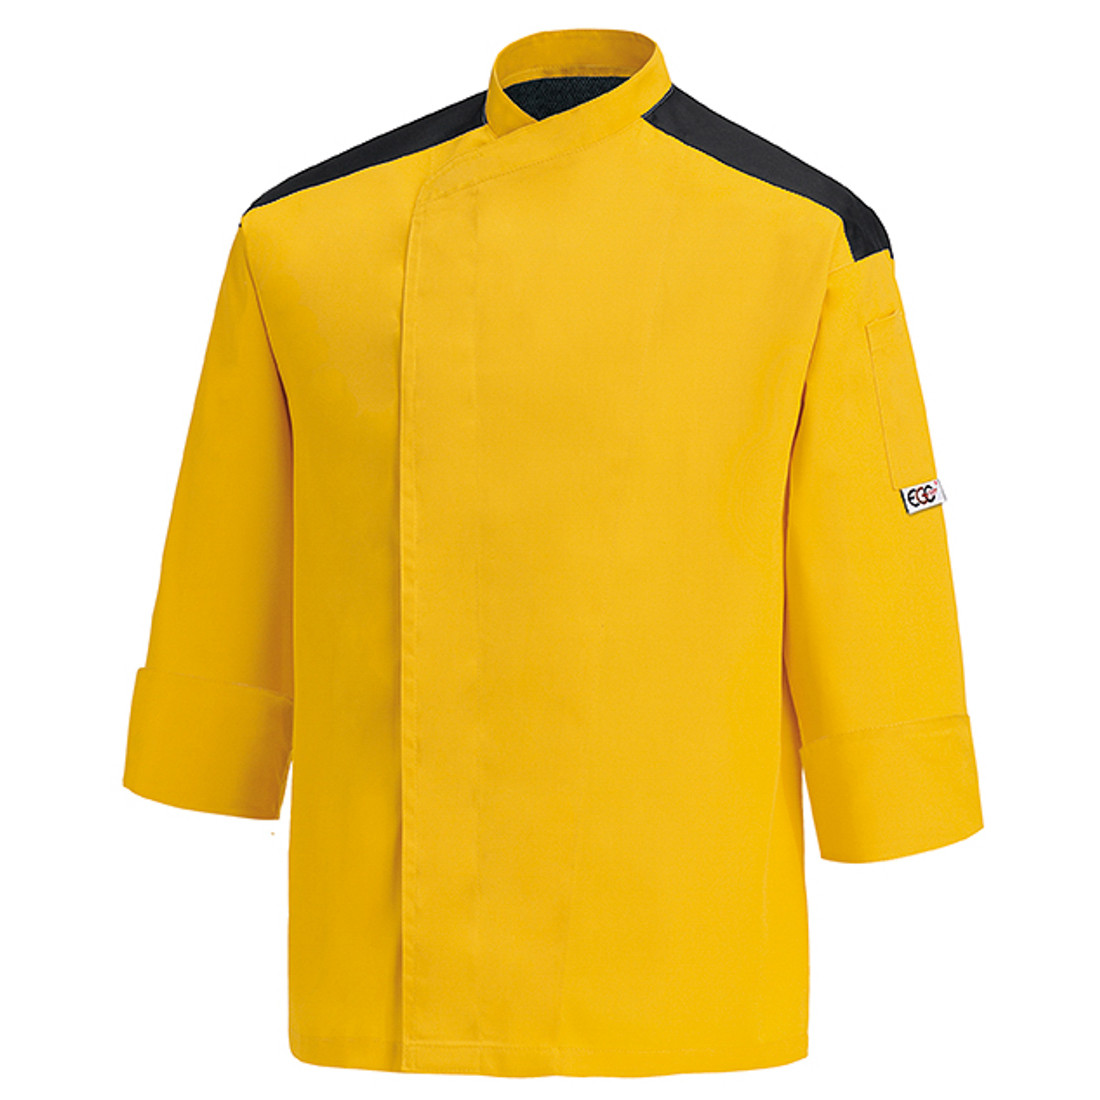 Veste chef First, 65% polyester/35% coton - Les vêtements de protection